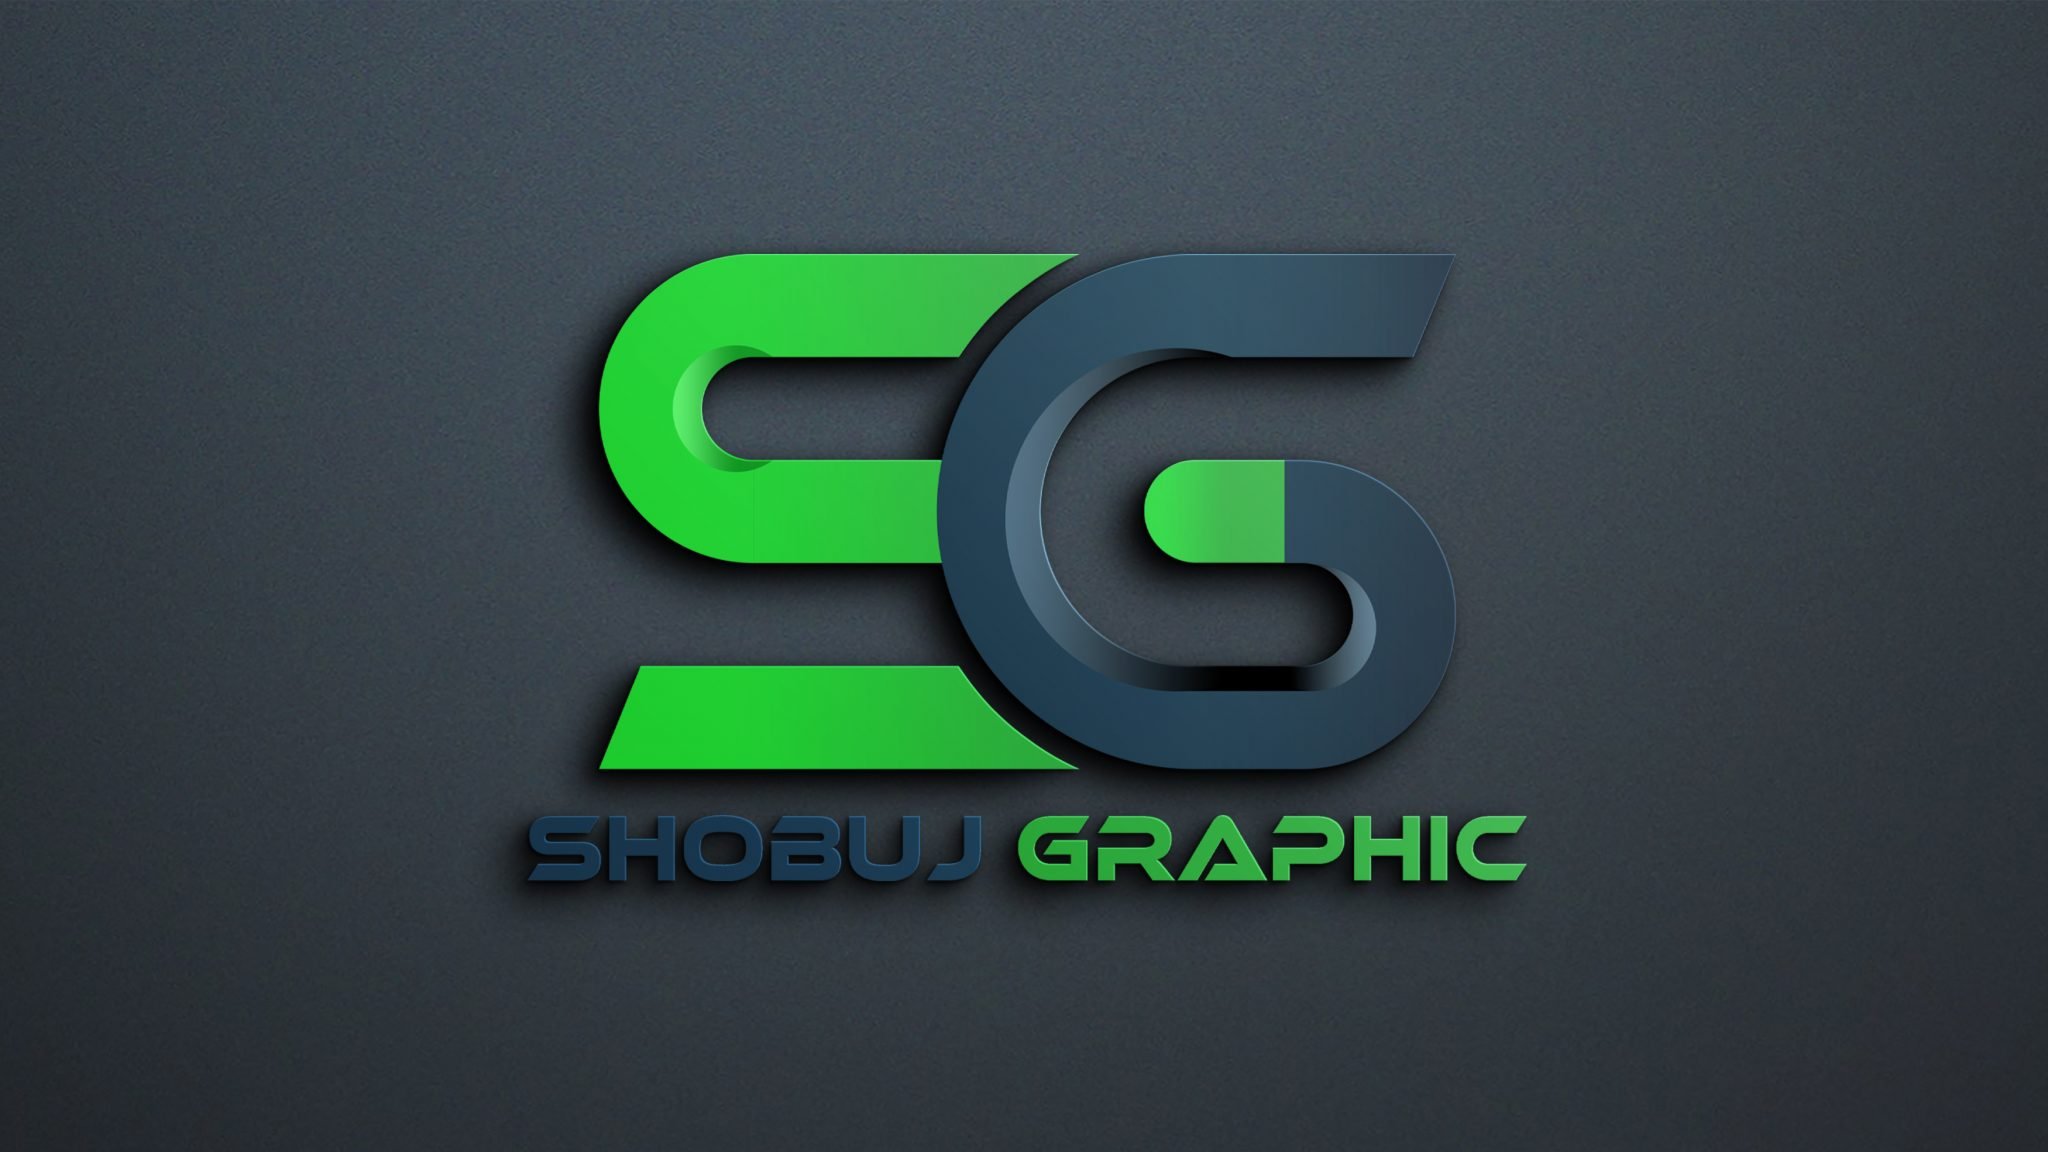 logo design free online logo maker and download